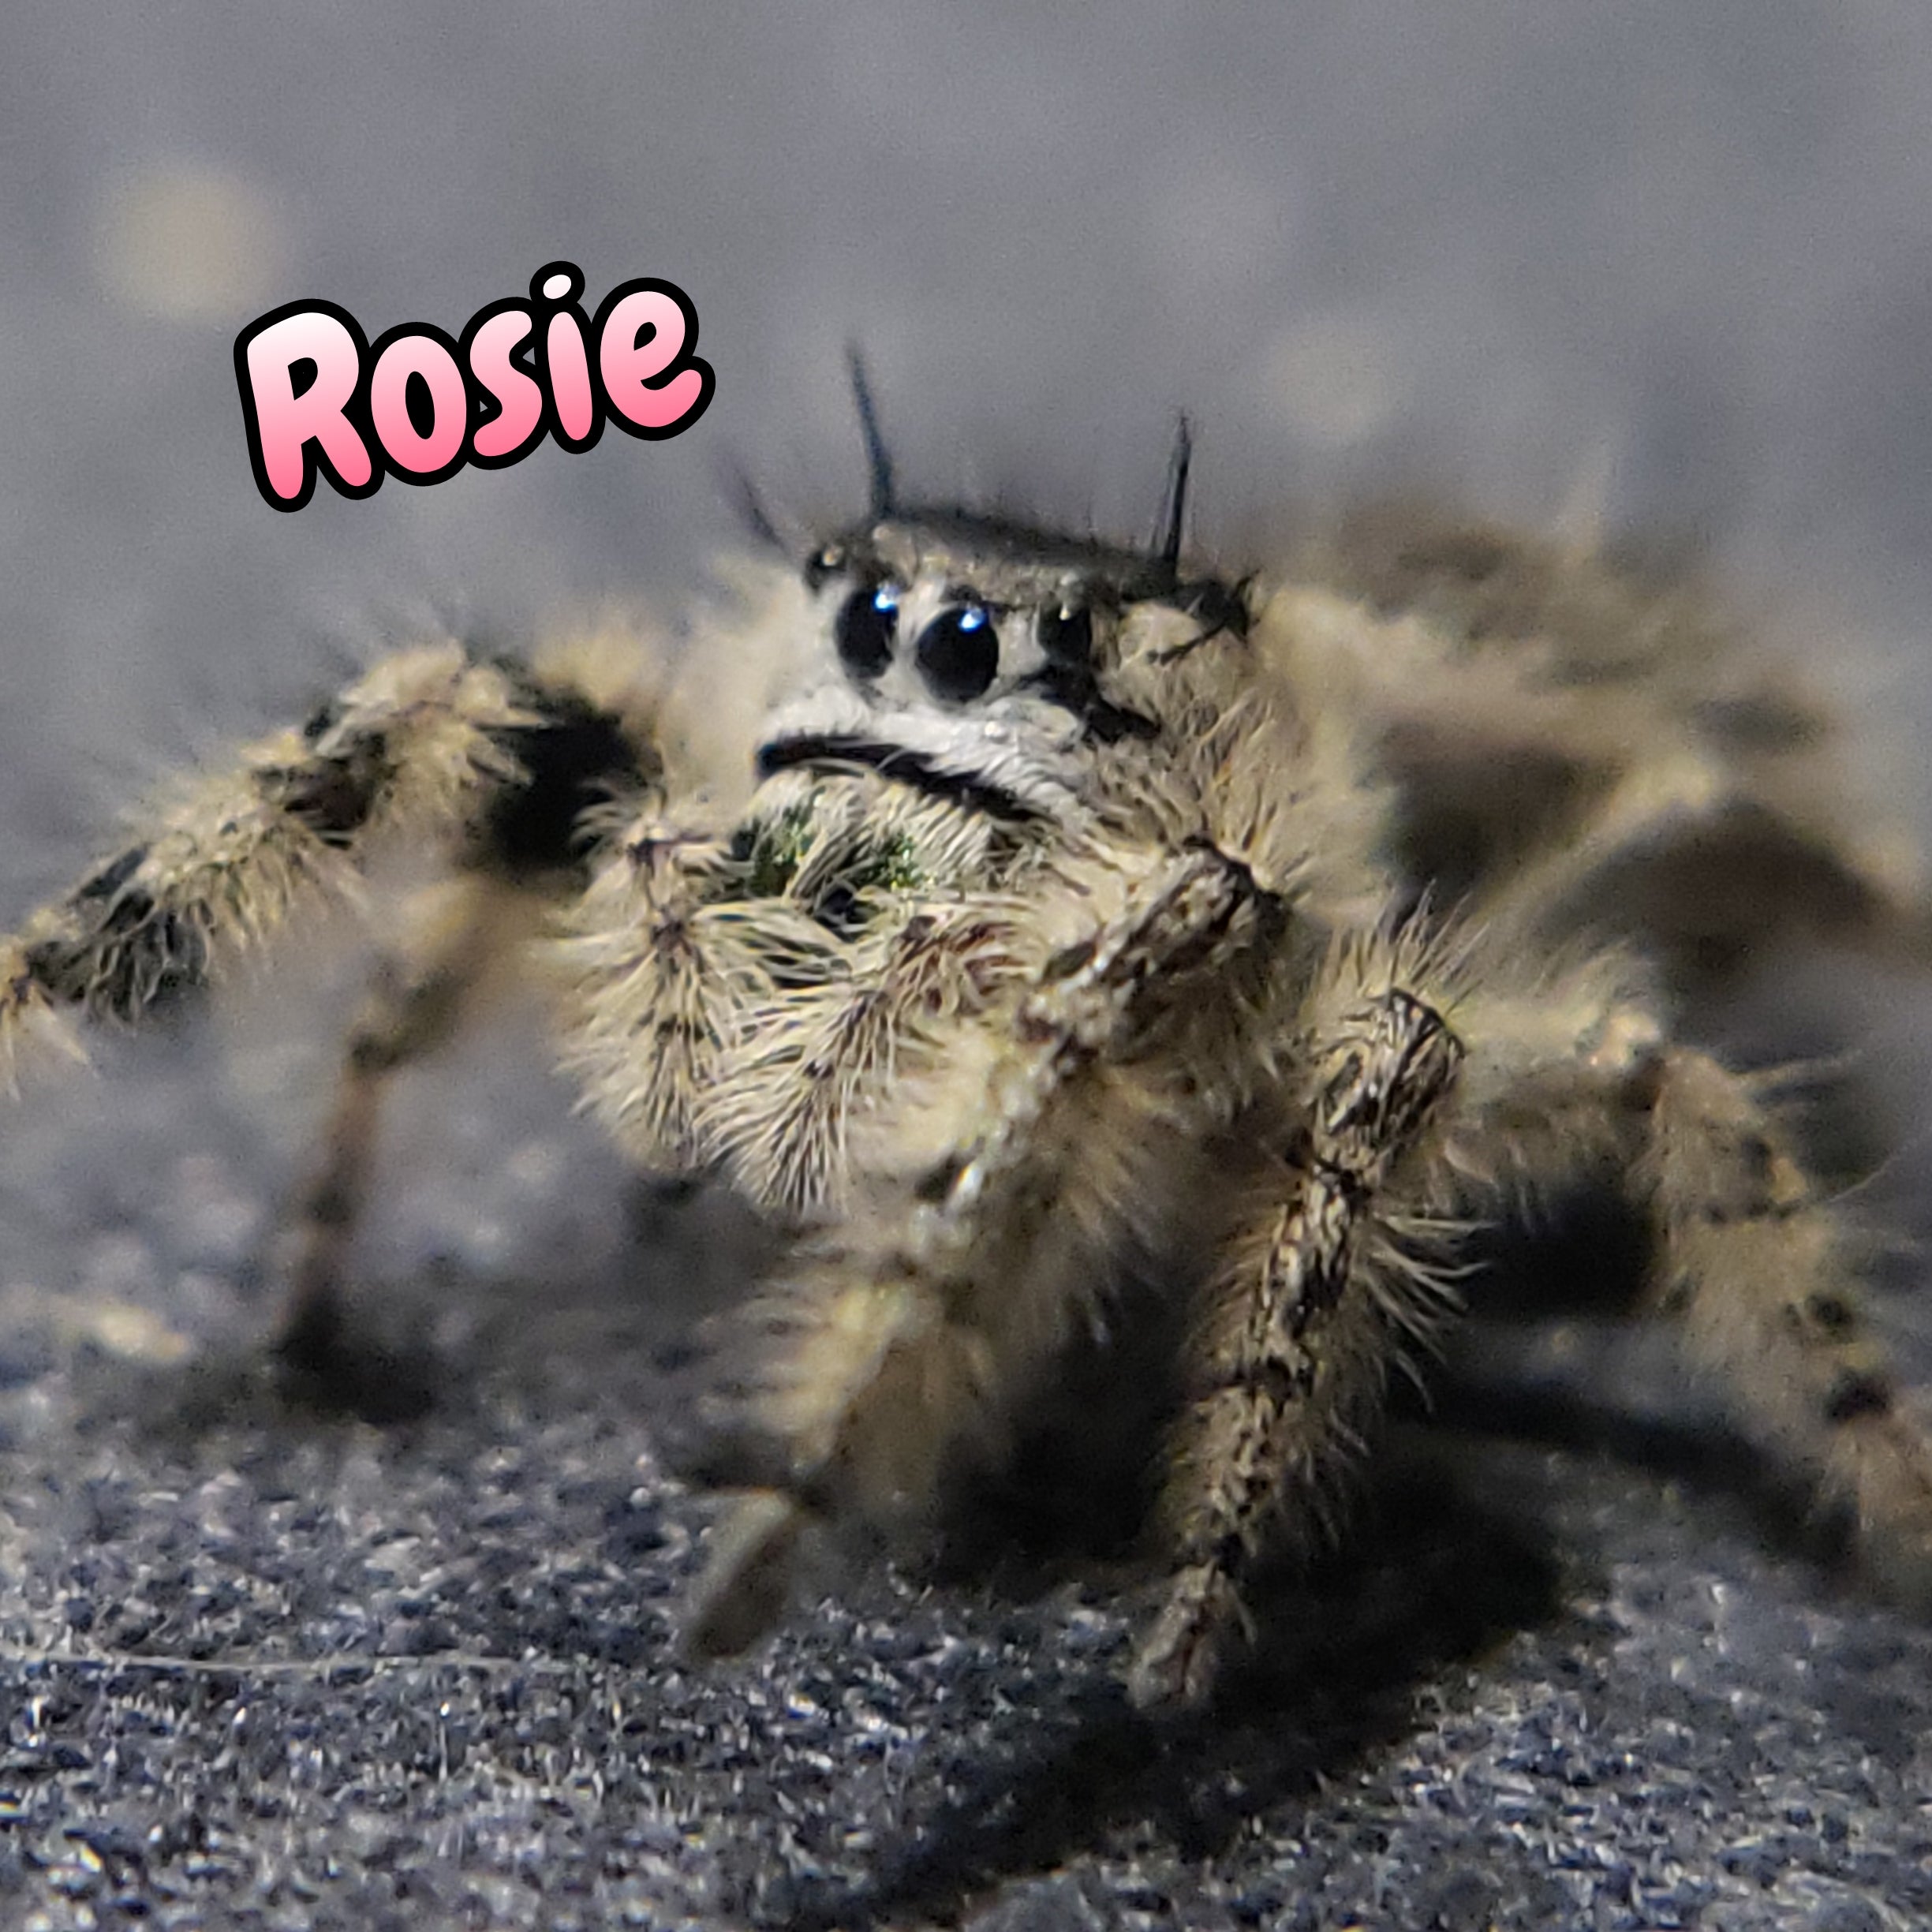 Otiosus Jumping Spider "Rosie" (High White)